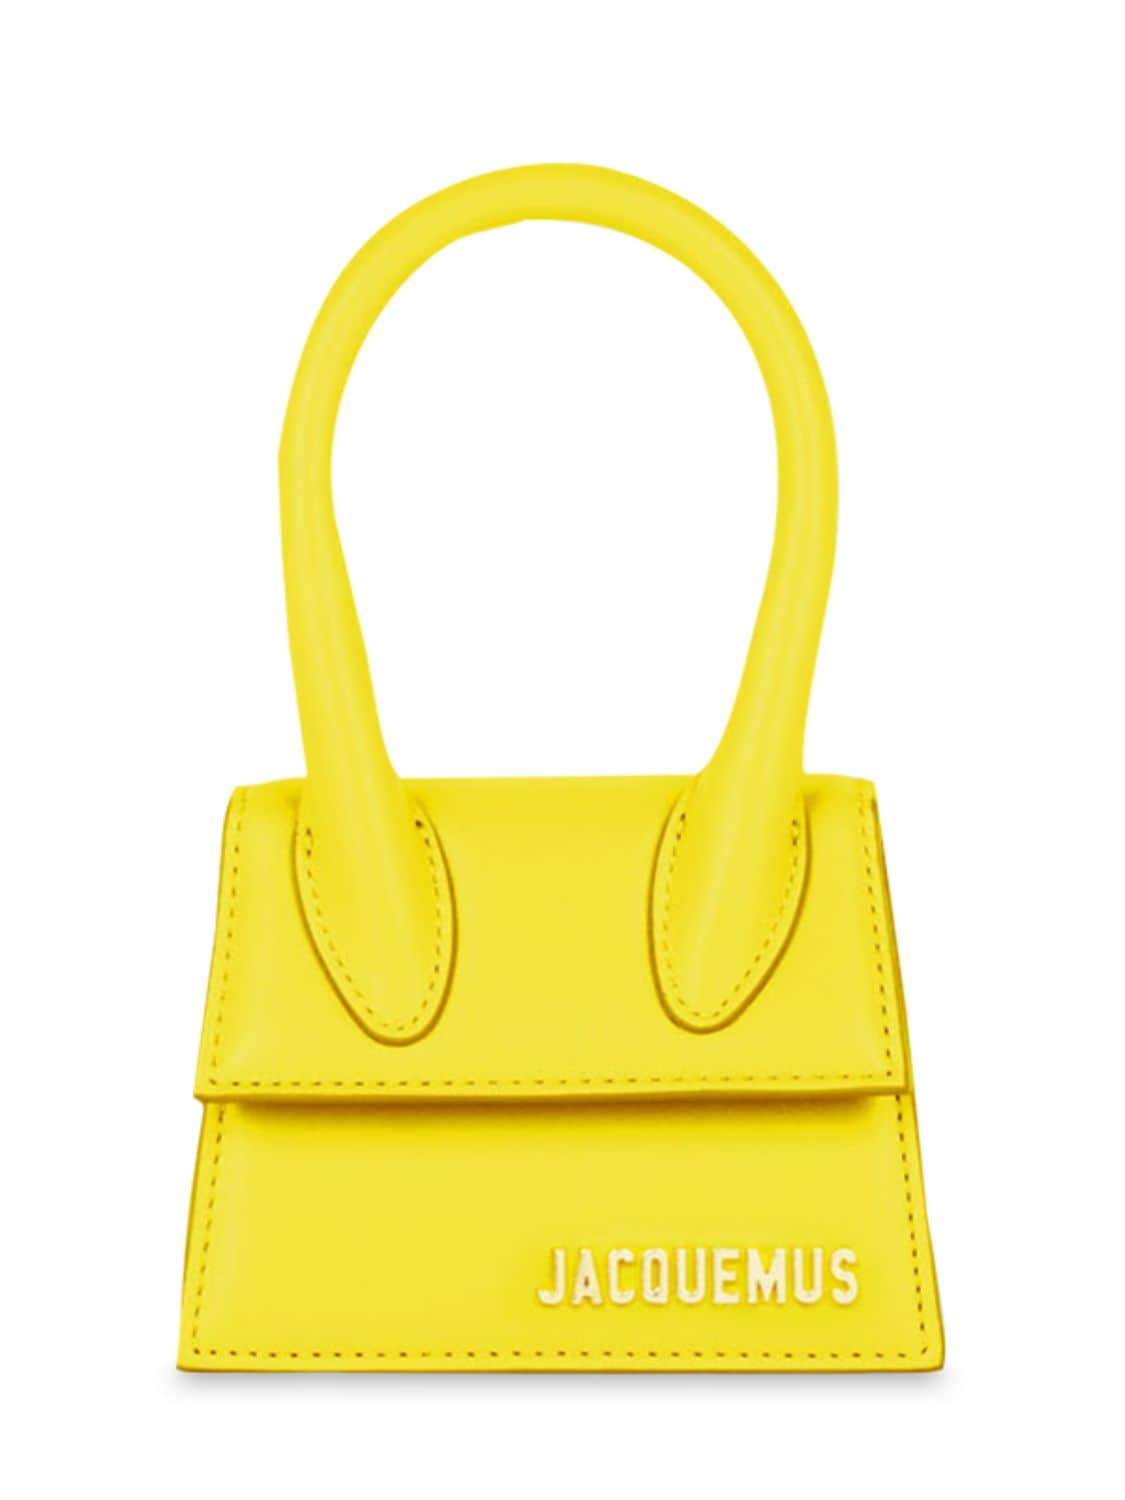 Jacquemus Le Chiquito皮革手提包 In Yellow